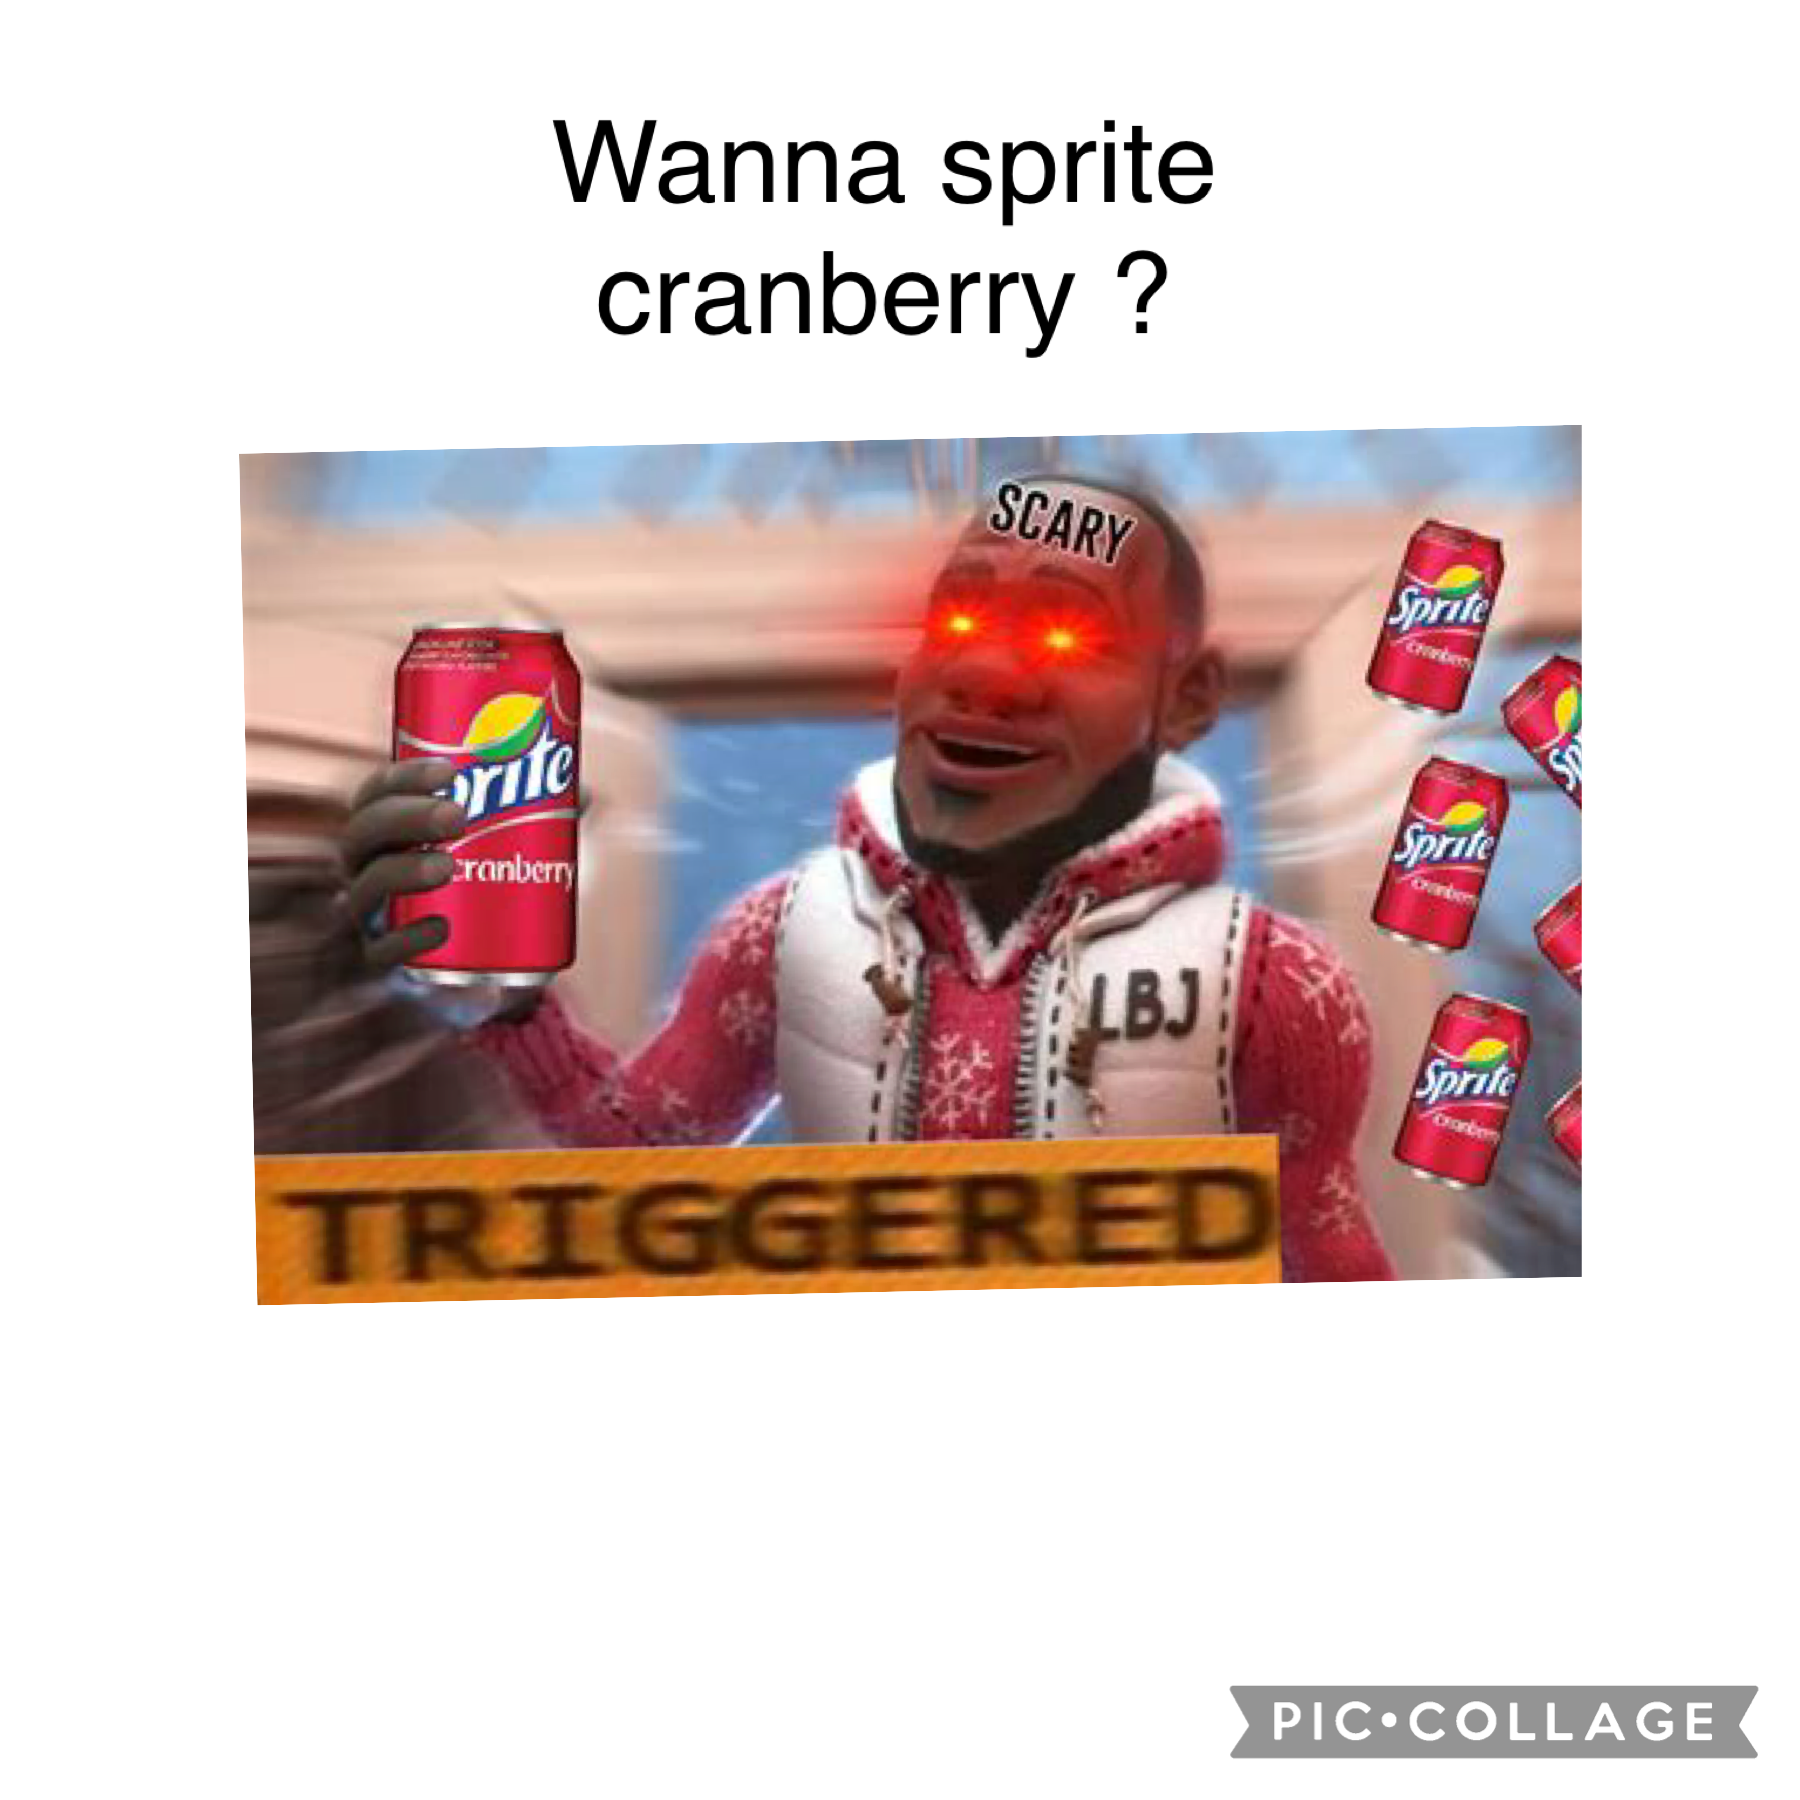 Wanna sprite cranberry